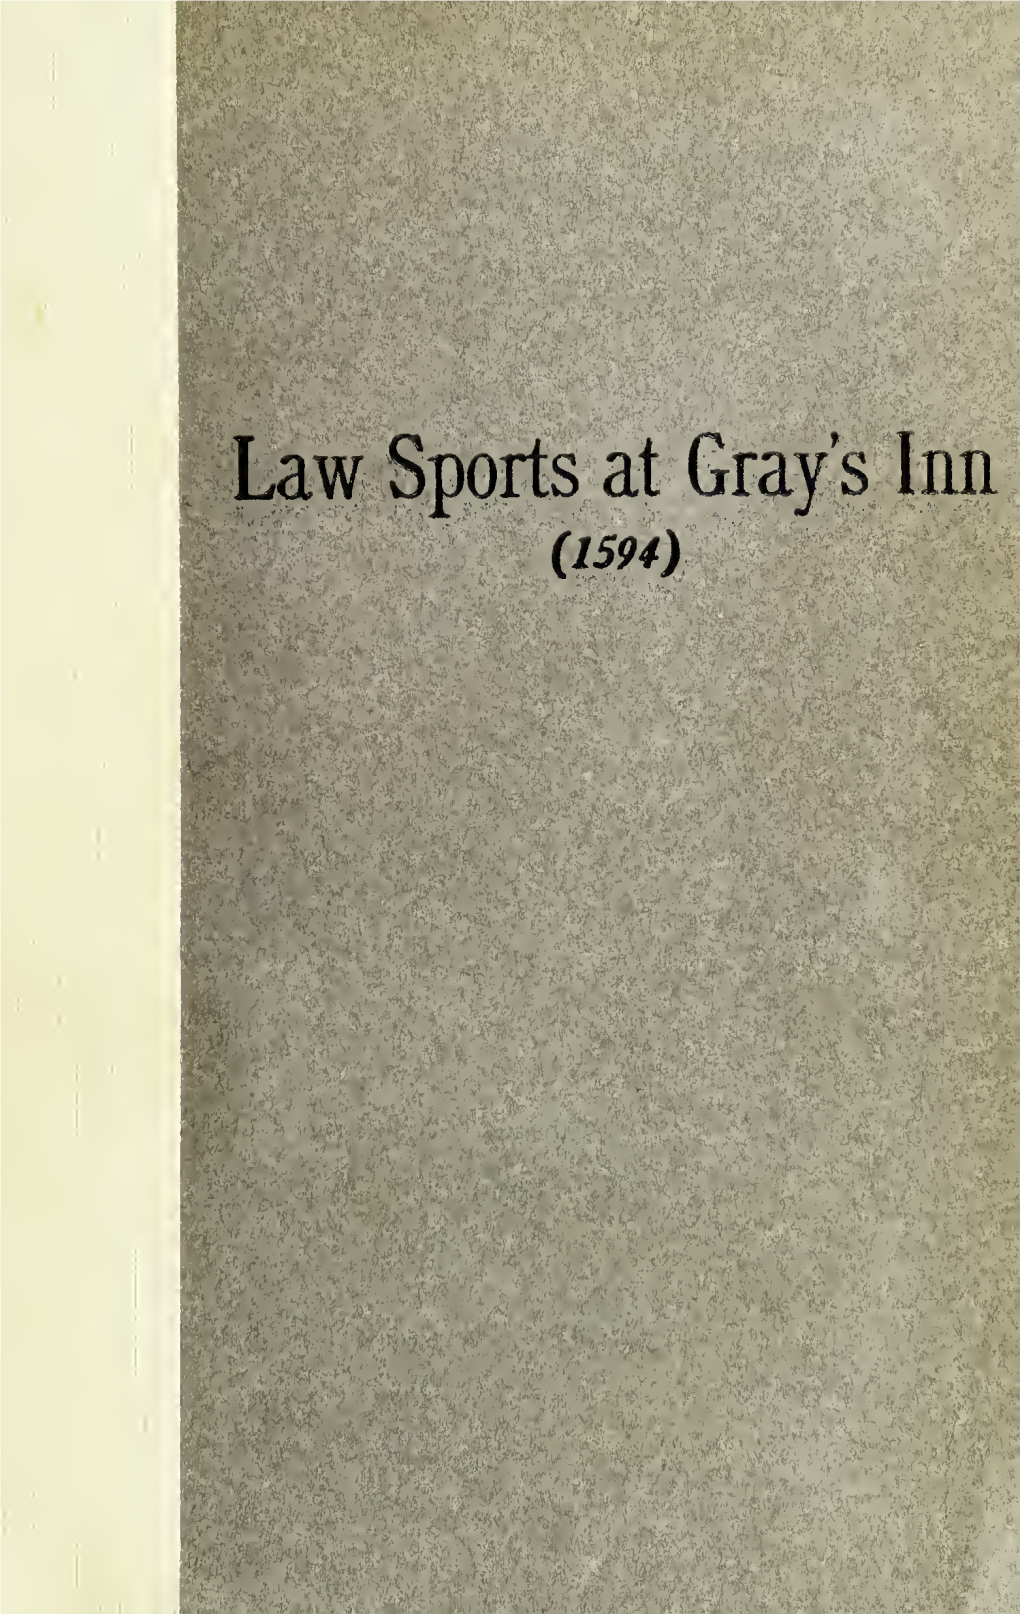 Law Sports at Gray's Inn Il594) PR